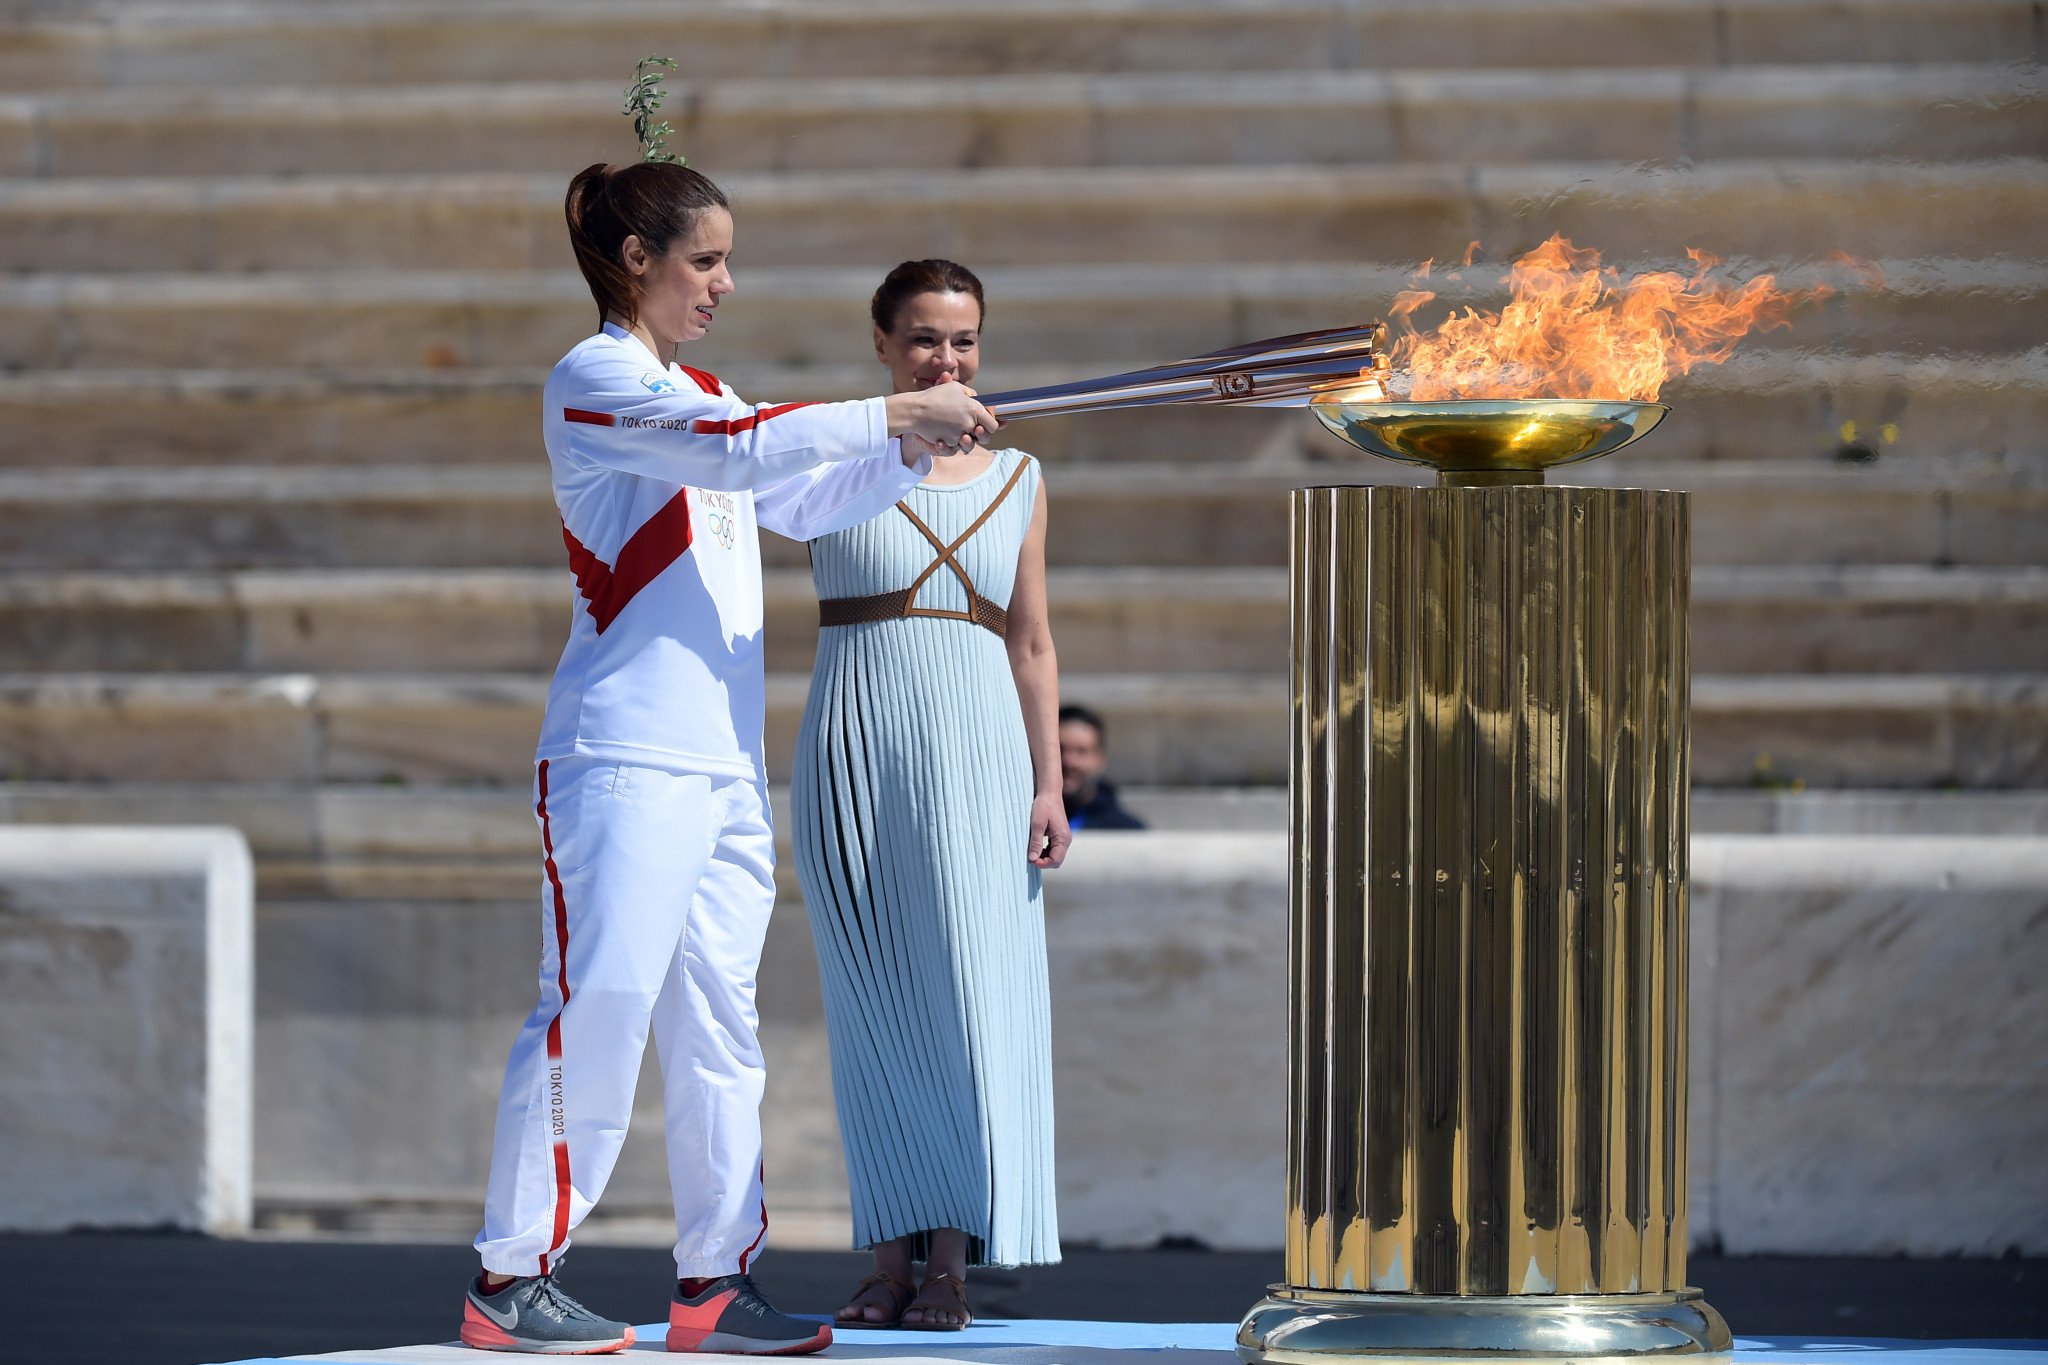 Олимпийский огонь современных игр зажигается. Зажжение олимпийского огня. Церемония зажжения олимпийского огня в Греции. Церемония зажжения олимпийского огня 2020. Олимпийский огонь Токио 2020.